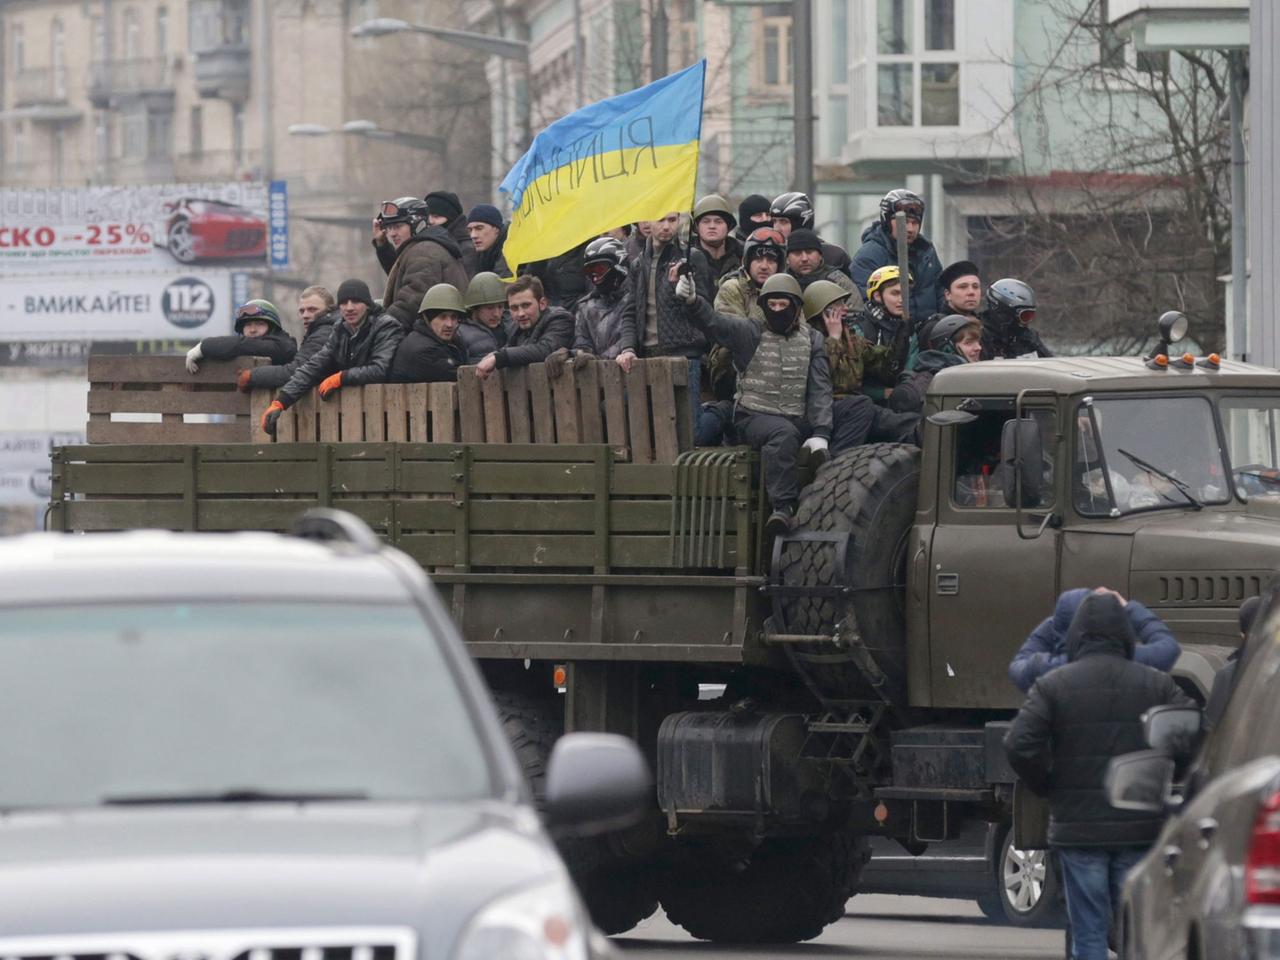 Vermummte Demonstranten auf einem Lastwagen schwenken eine ukrainische Flagge.